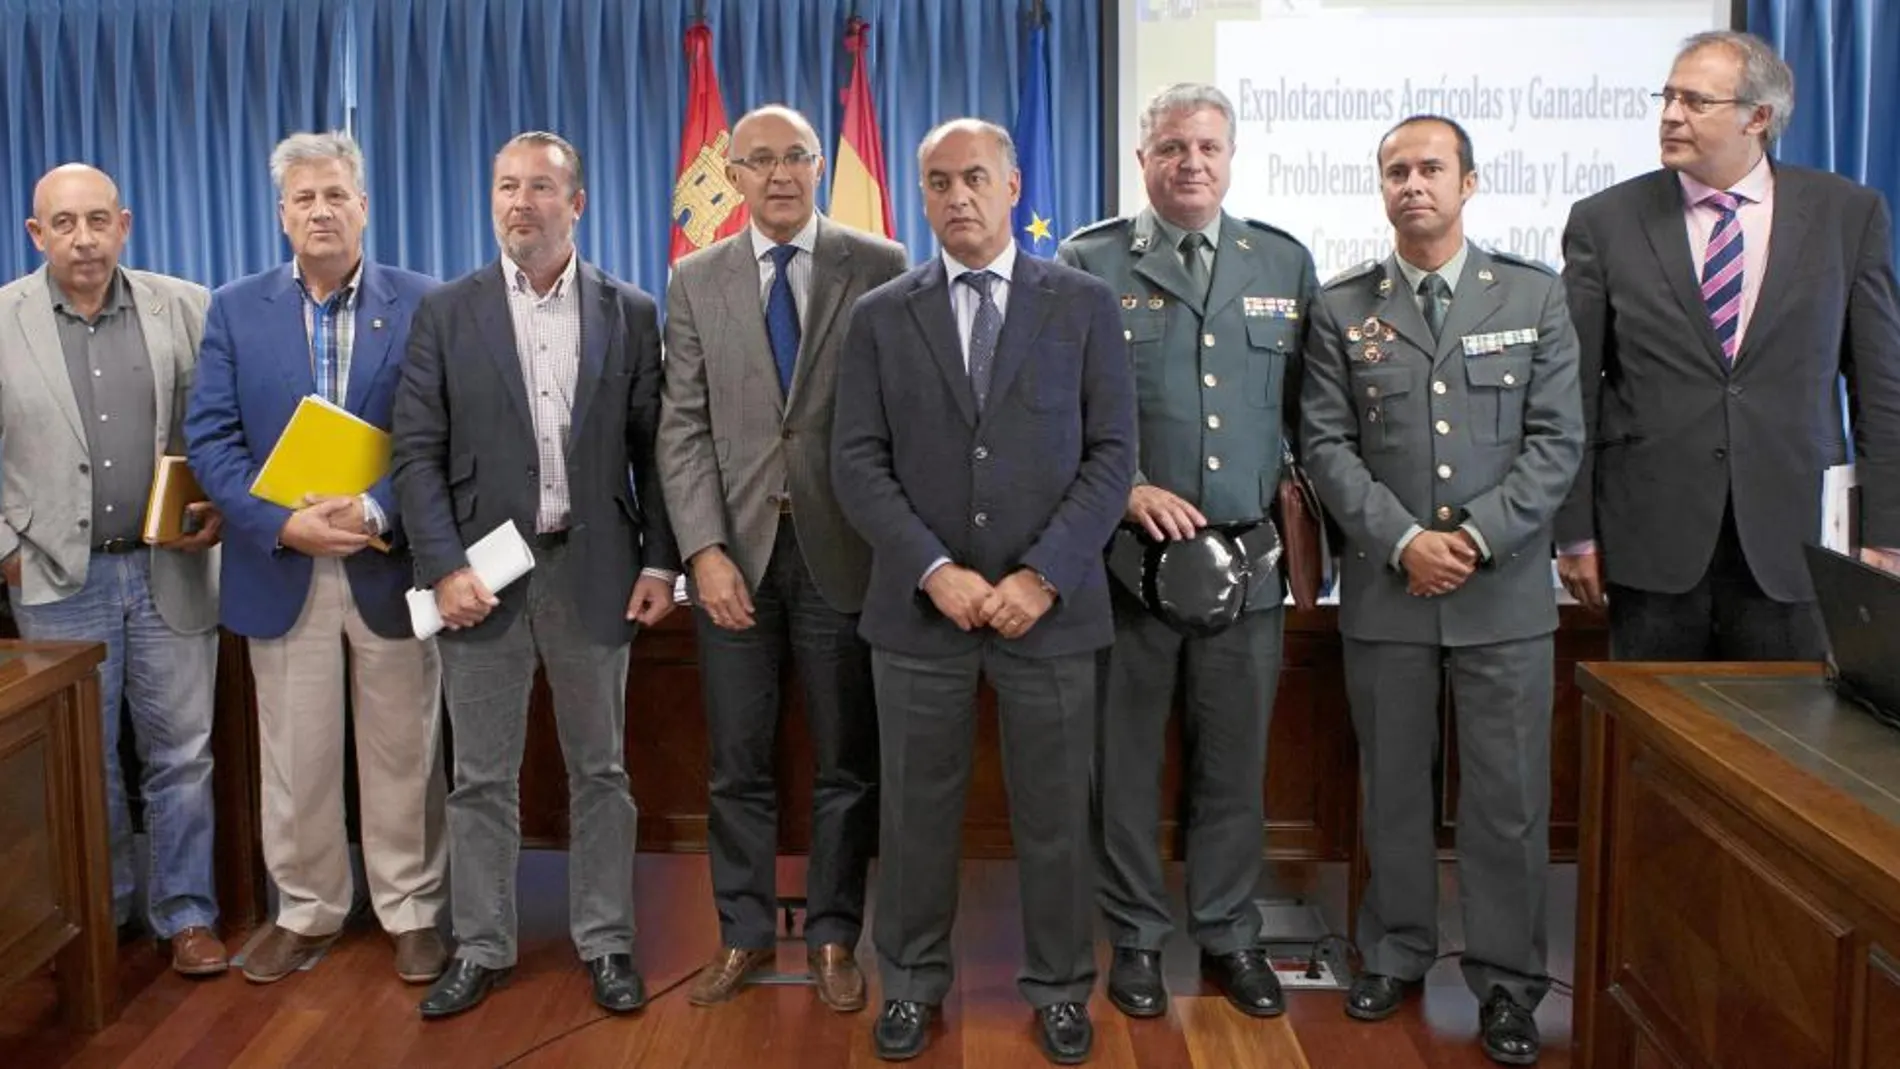 El delegado del Gobierno, Ramiro Ruiz Medrano, y los agentes Jesús Gayoso y Díez Cubelos, entre otros, explican la operación al presidente de la FRMP y las OPAs